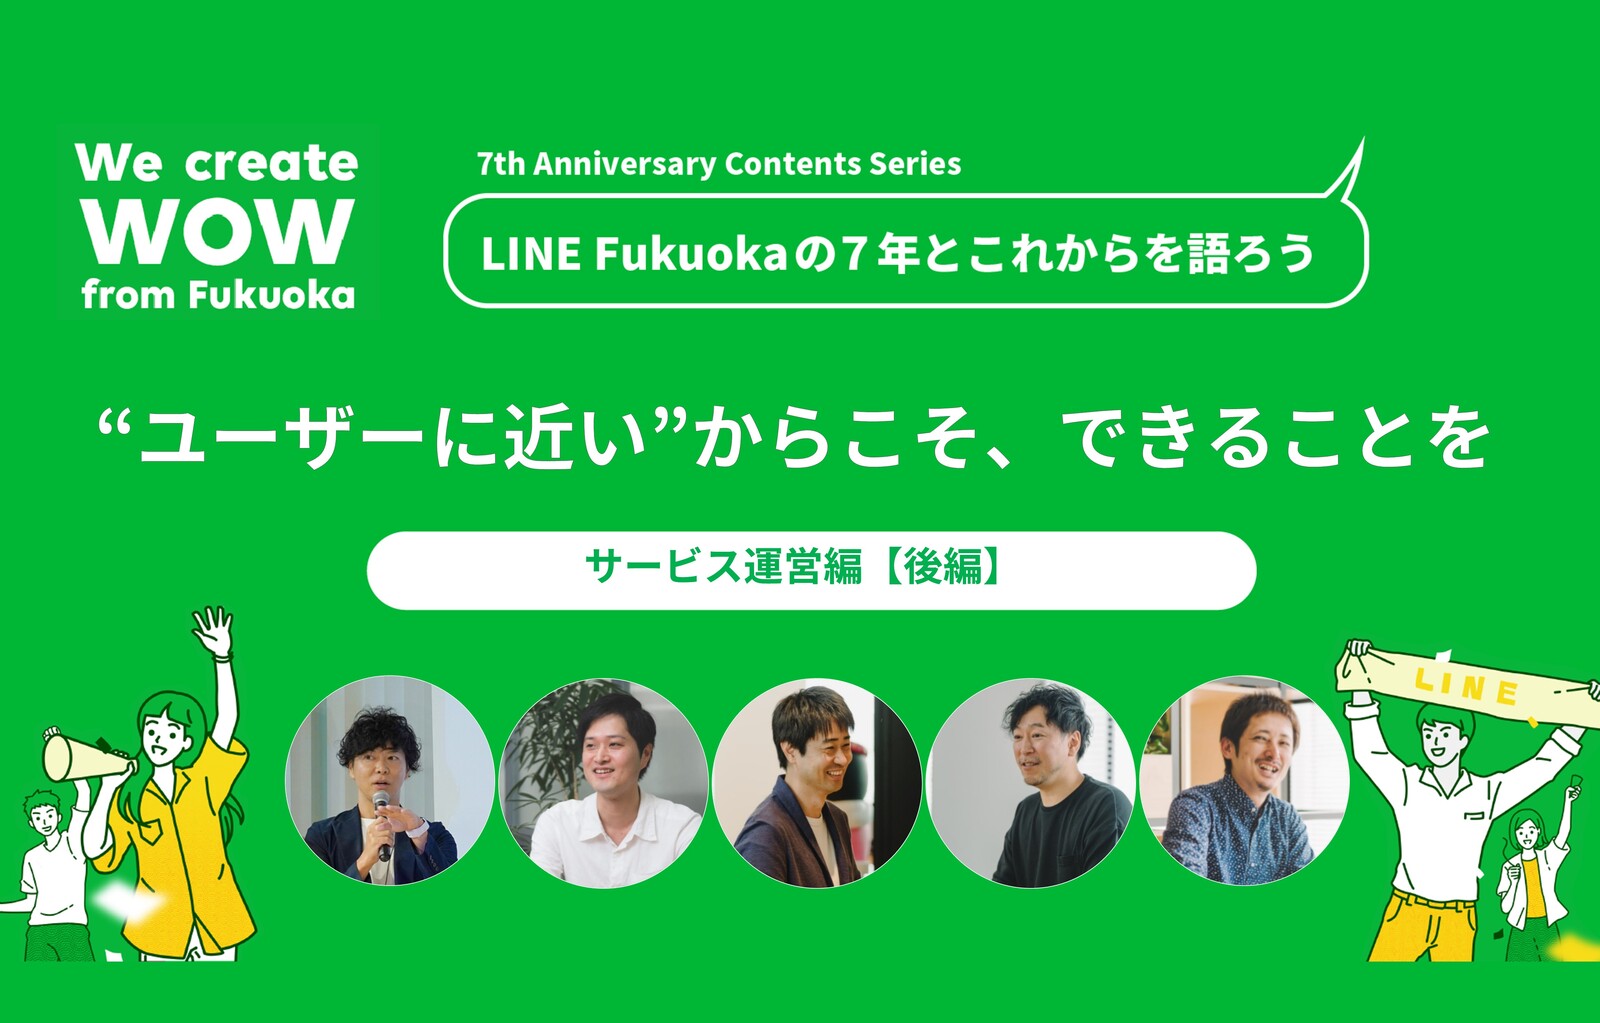 「ユーザーに最も近い組織」だからこそ、できることを―LINE Fukuoka「サービス運営」の7年とこれから【後編】 サムネイル画像